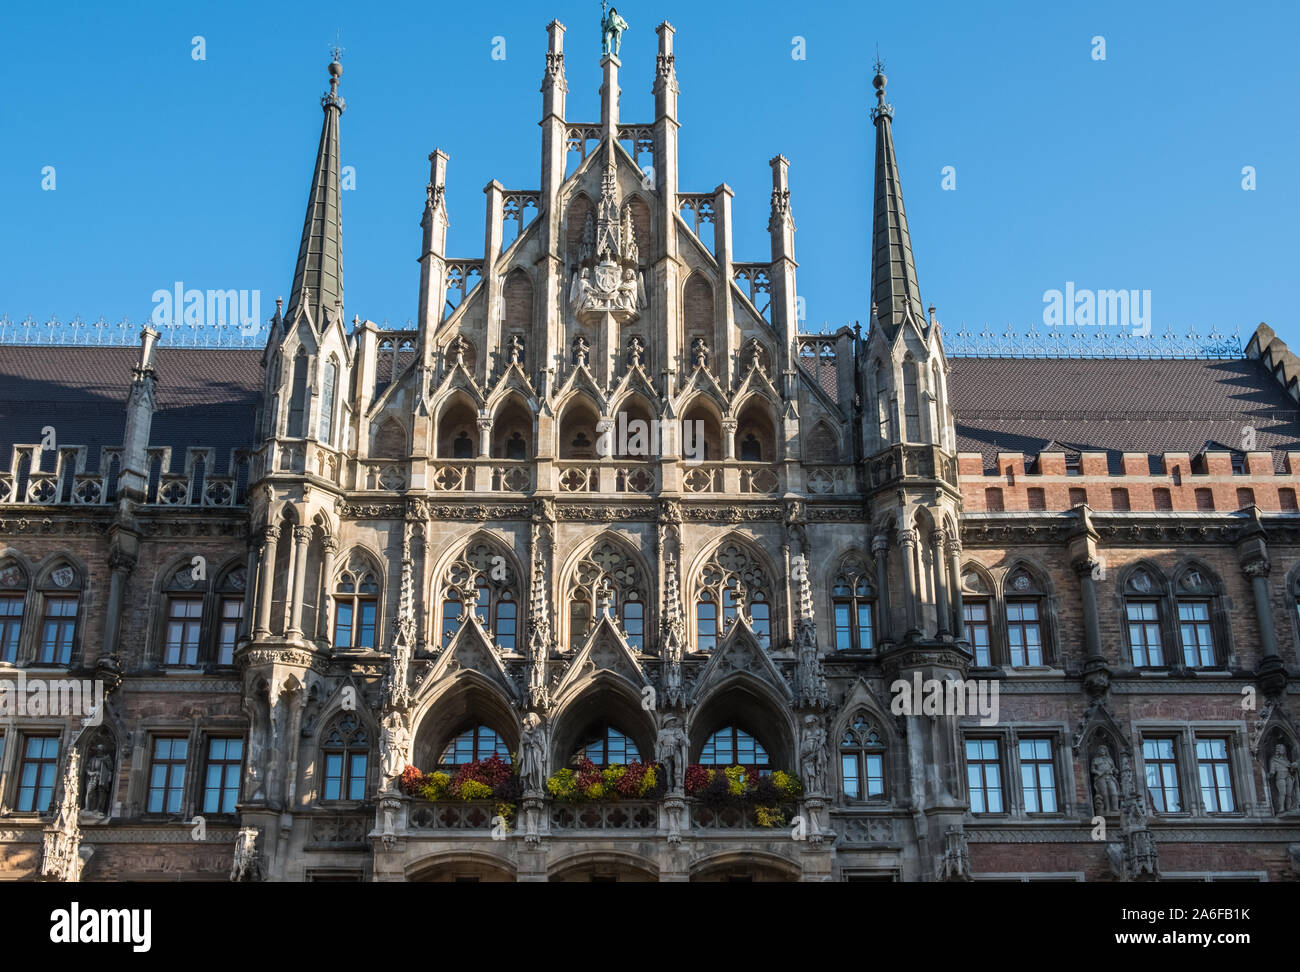 Die architektonischen Details des Neuen Rathauses (Neues Rathaus) mit seinen reich verzierten neo-gotischen Fassade, Marienplatz, Altstadt, München, Bayern, Deutschland Stockfoto